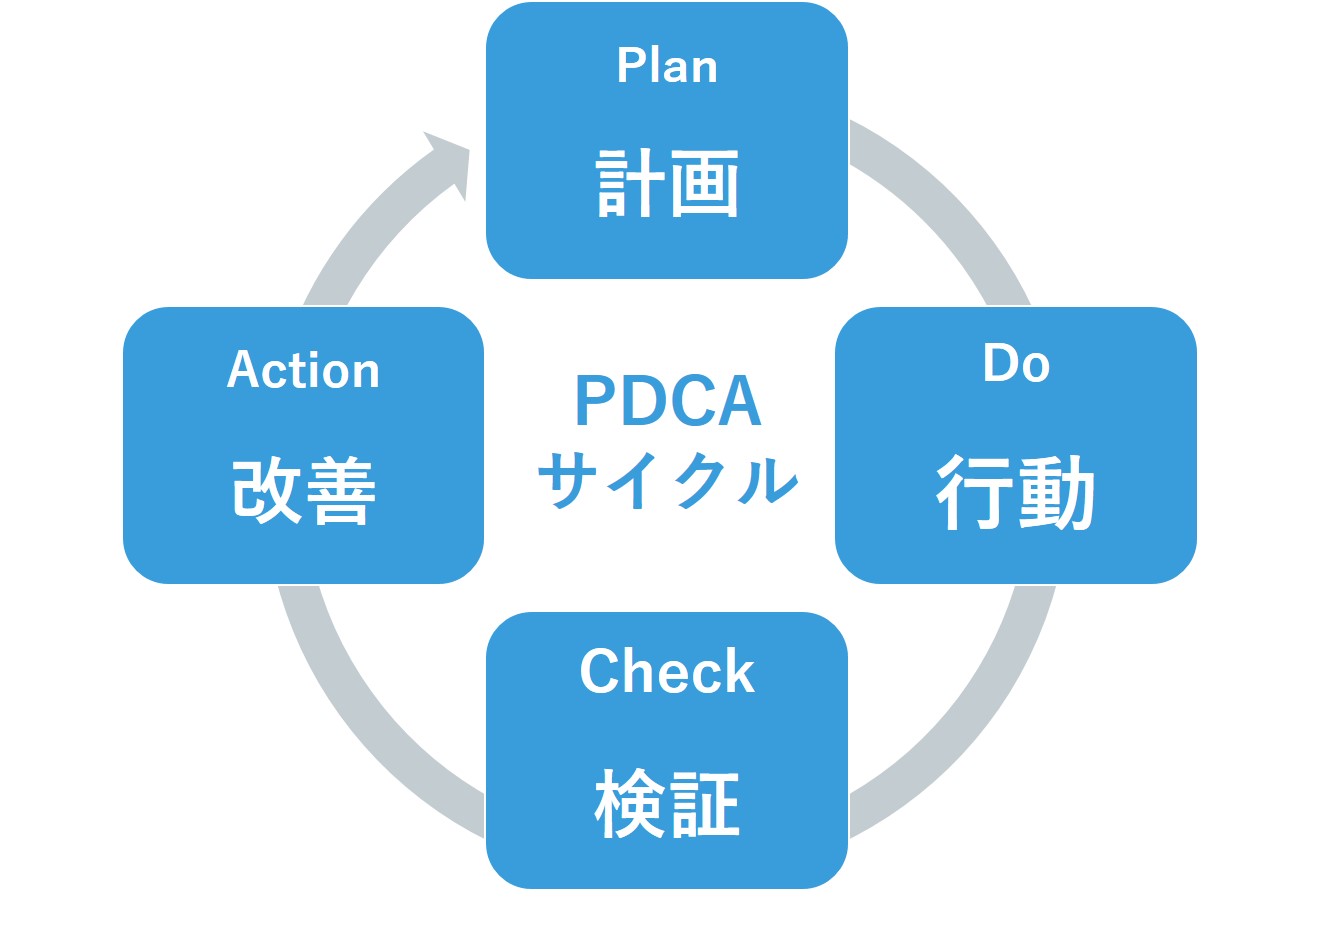 生産・品質管理の手法から生まれた「PDCA」